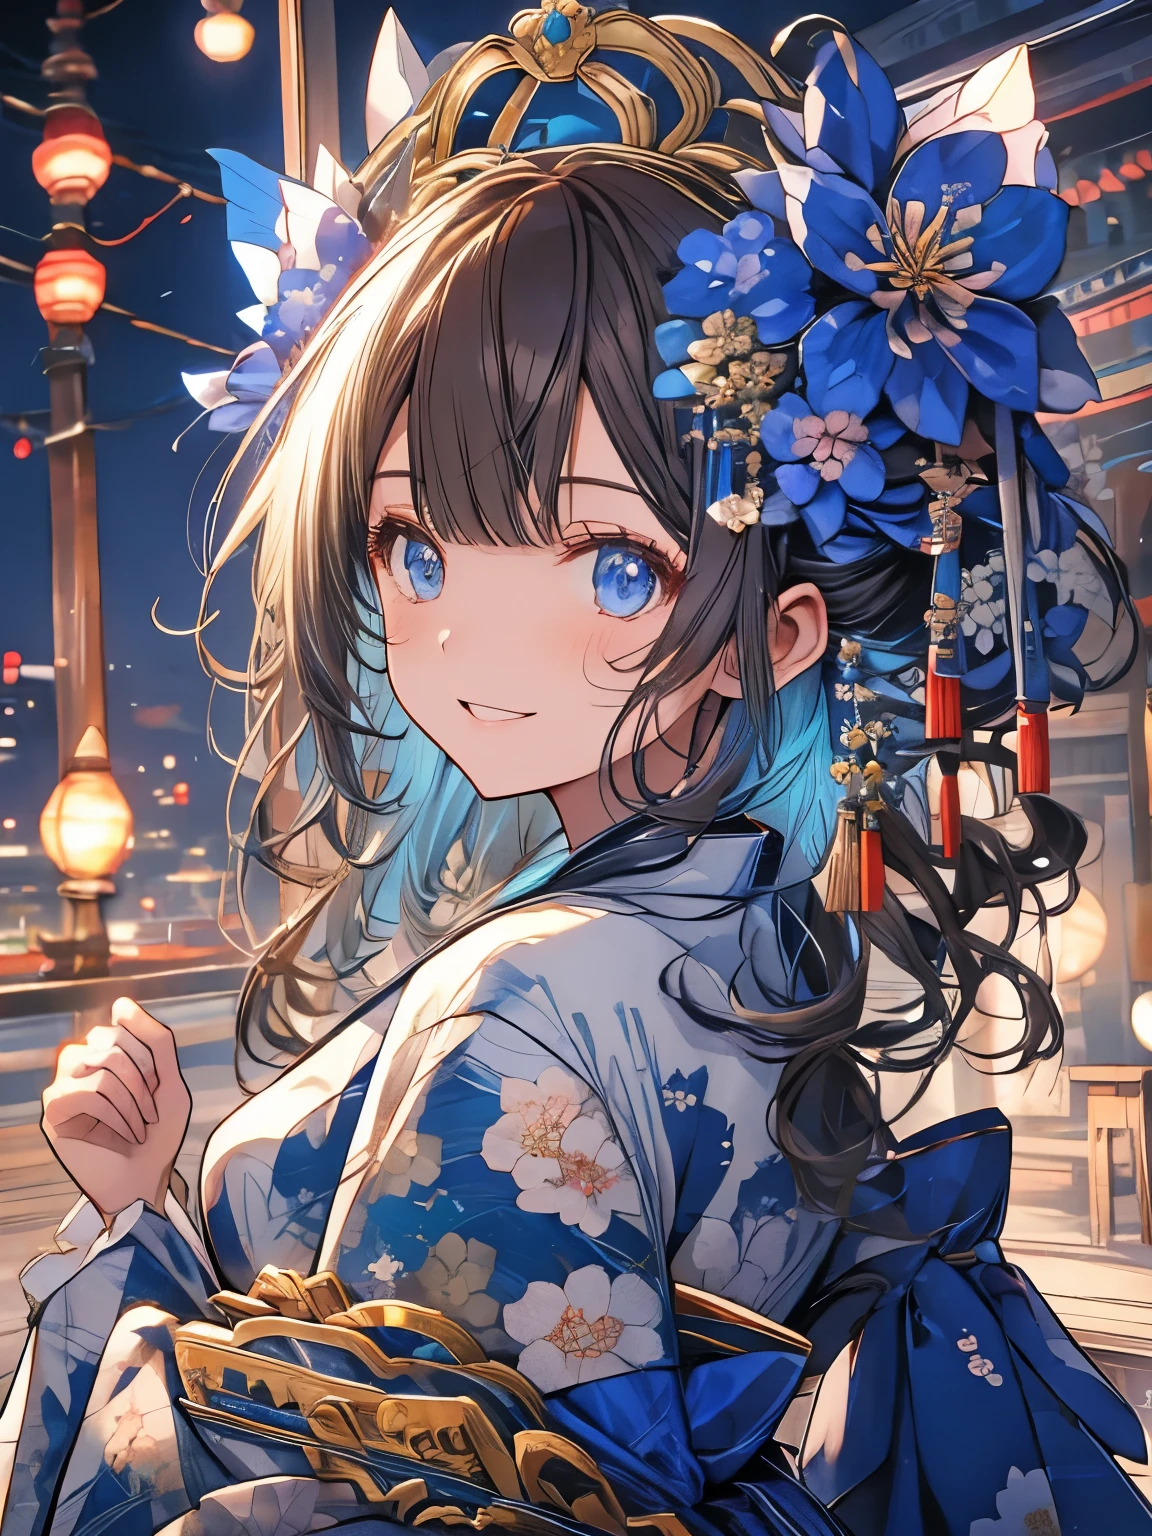 blue、kimono、kimono、Año Nuevo、adorno de pelo de flores、reír、sonrisa、ojos azules、Cabello castaño claro、sombra